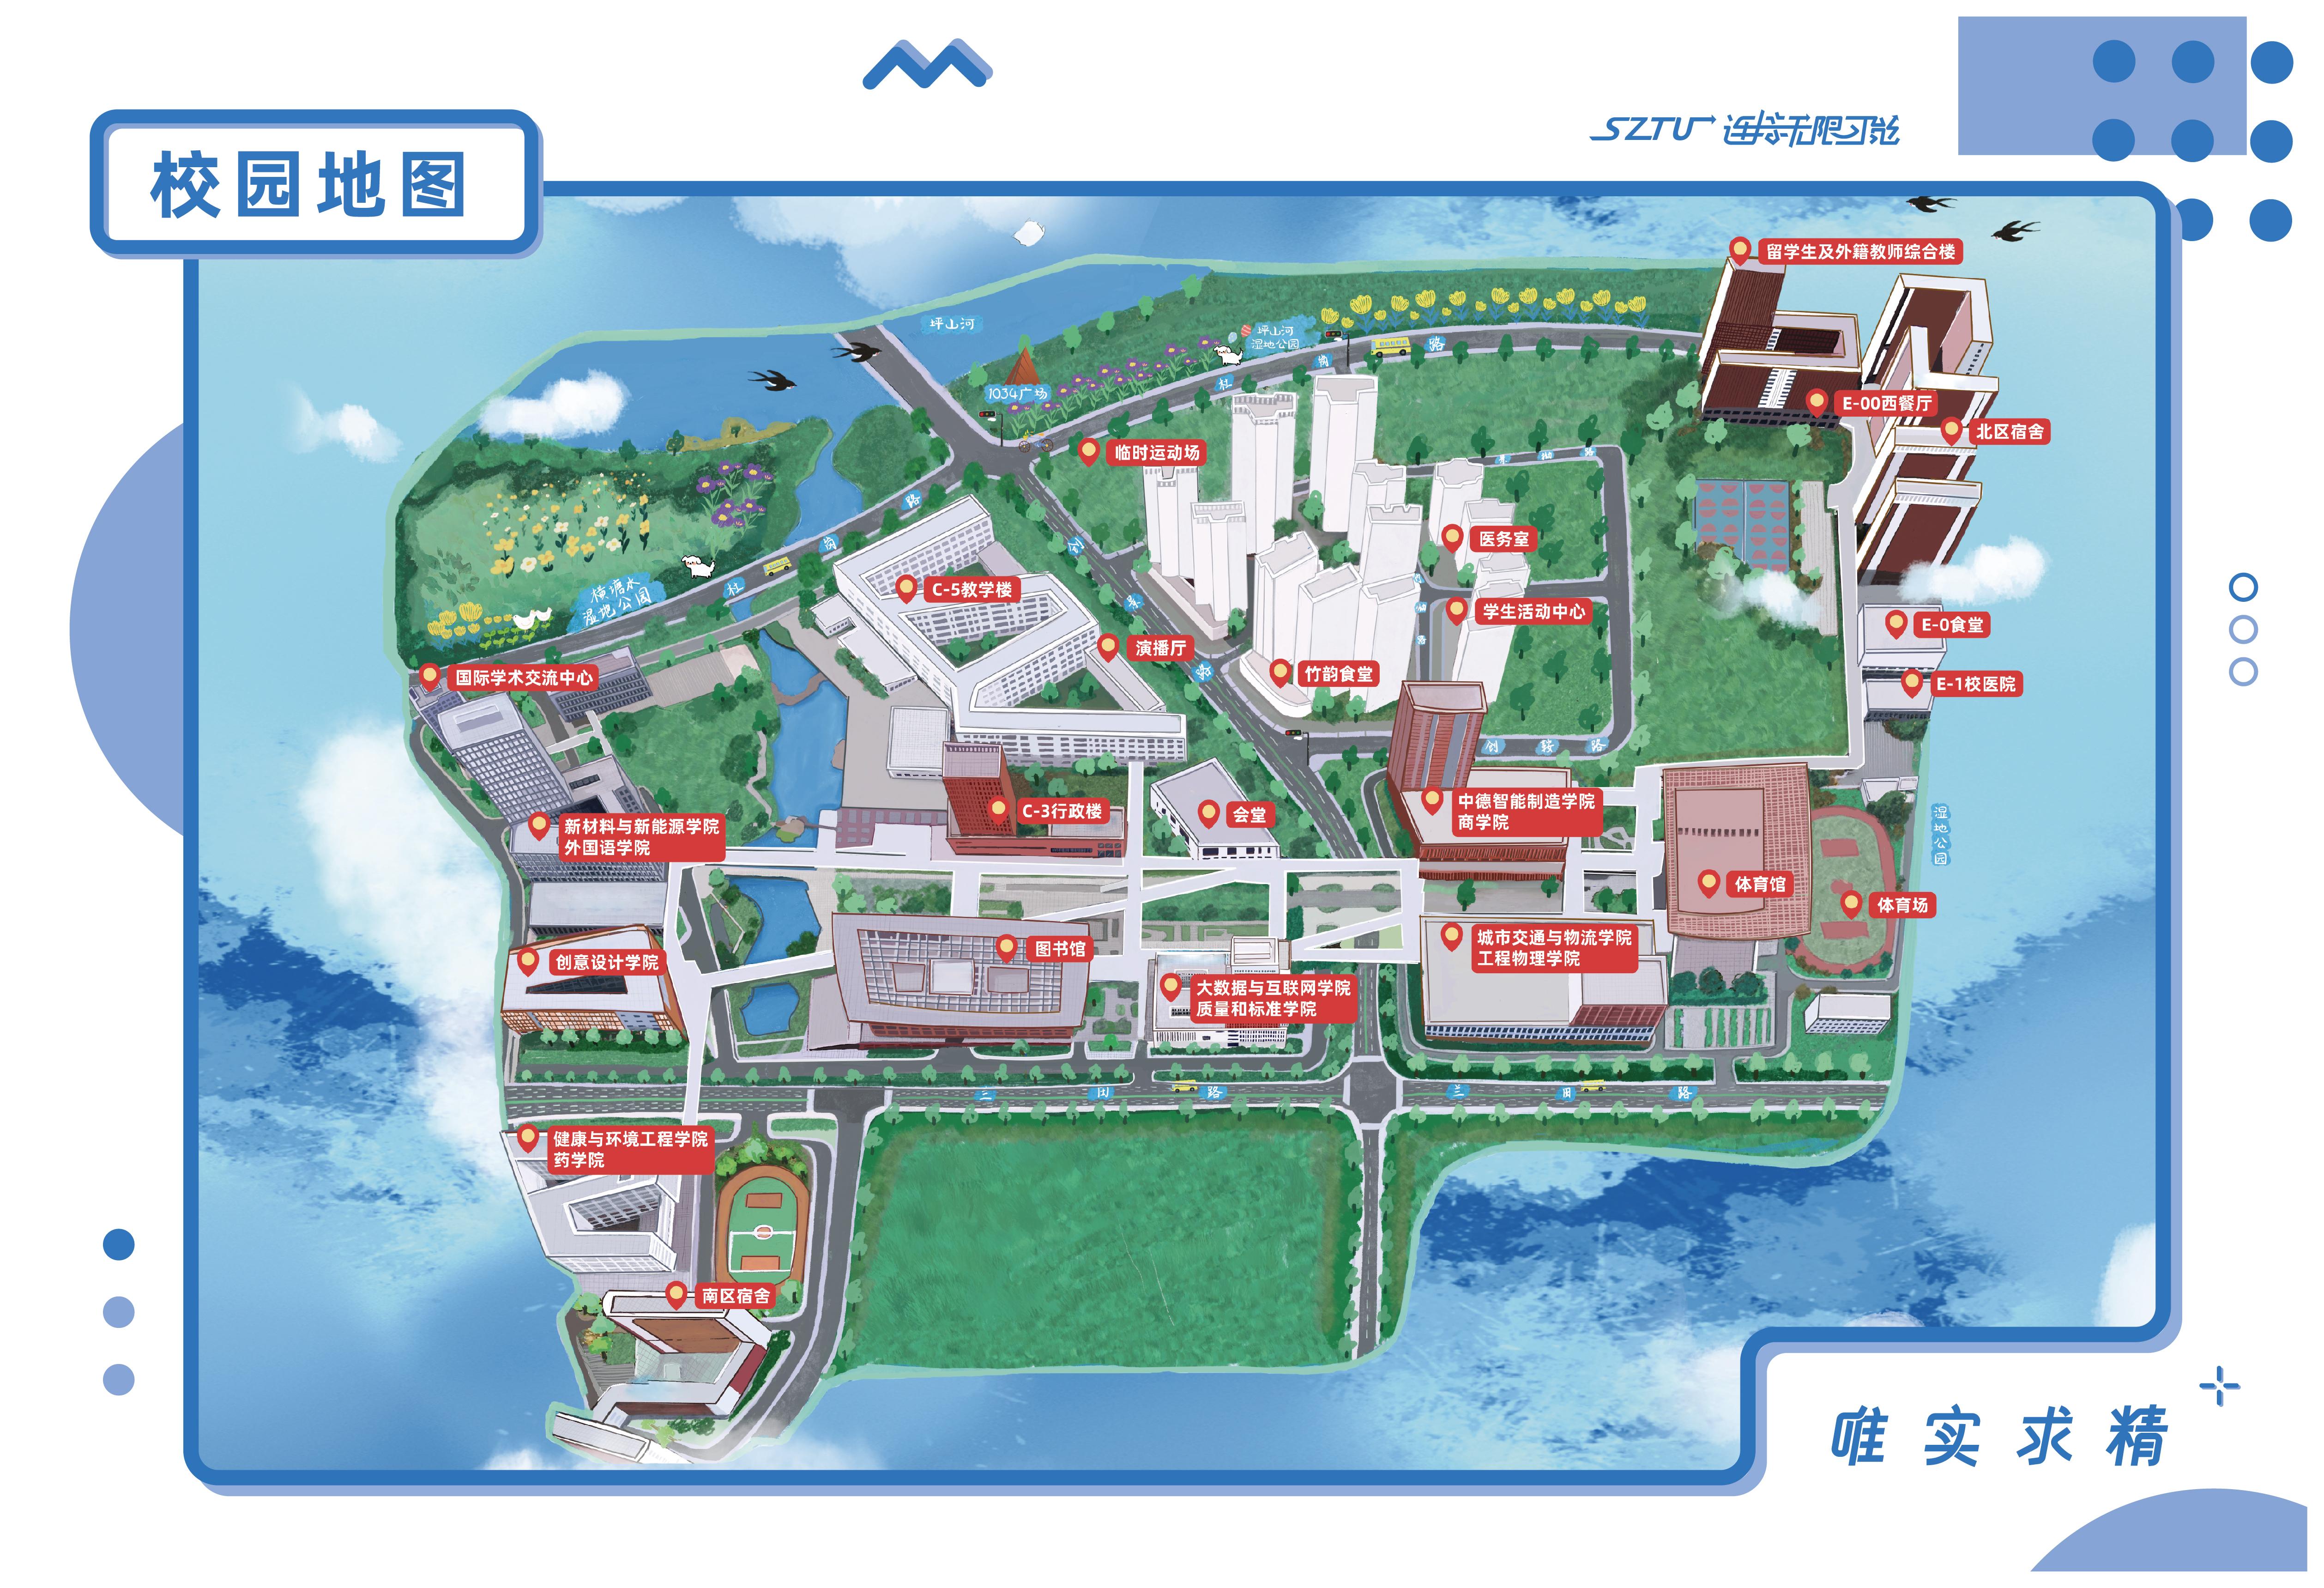 深圳职业技术学院地图图片